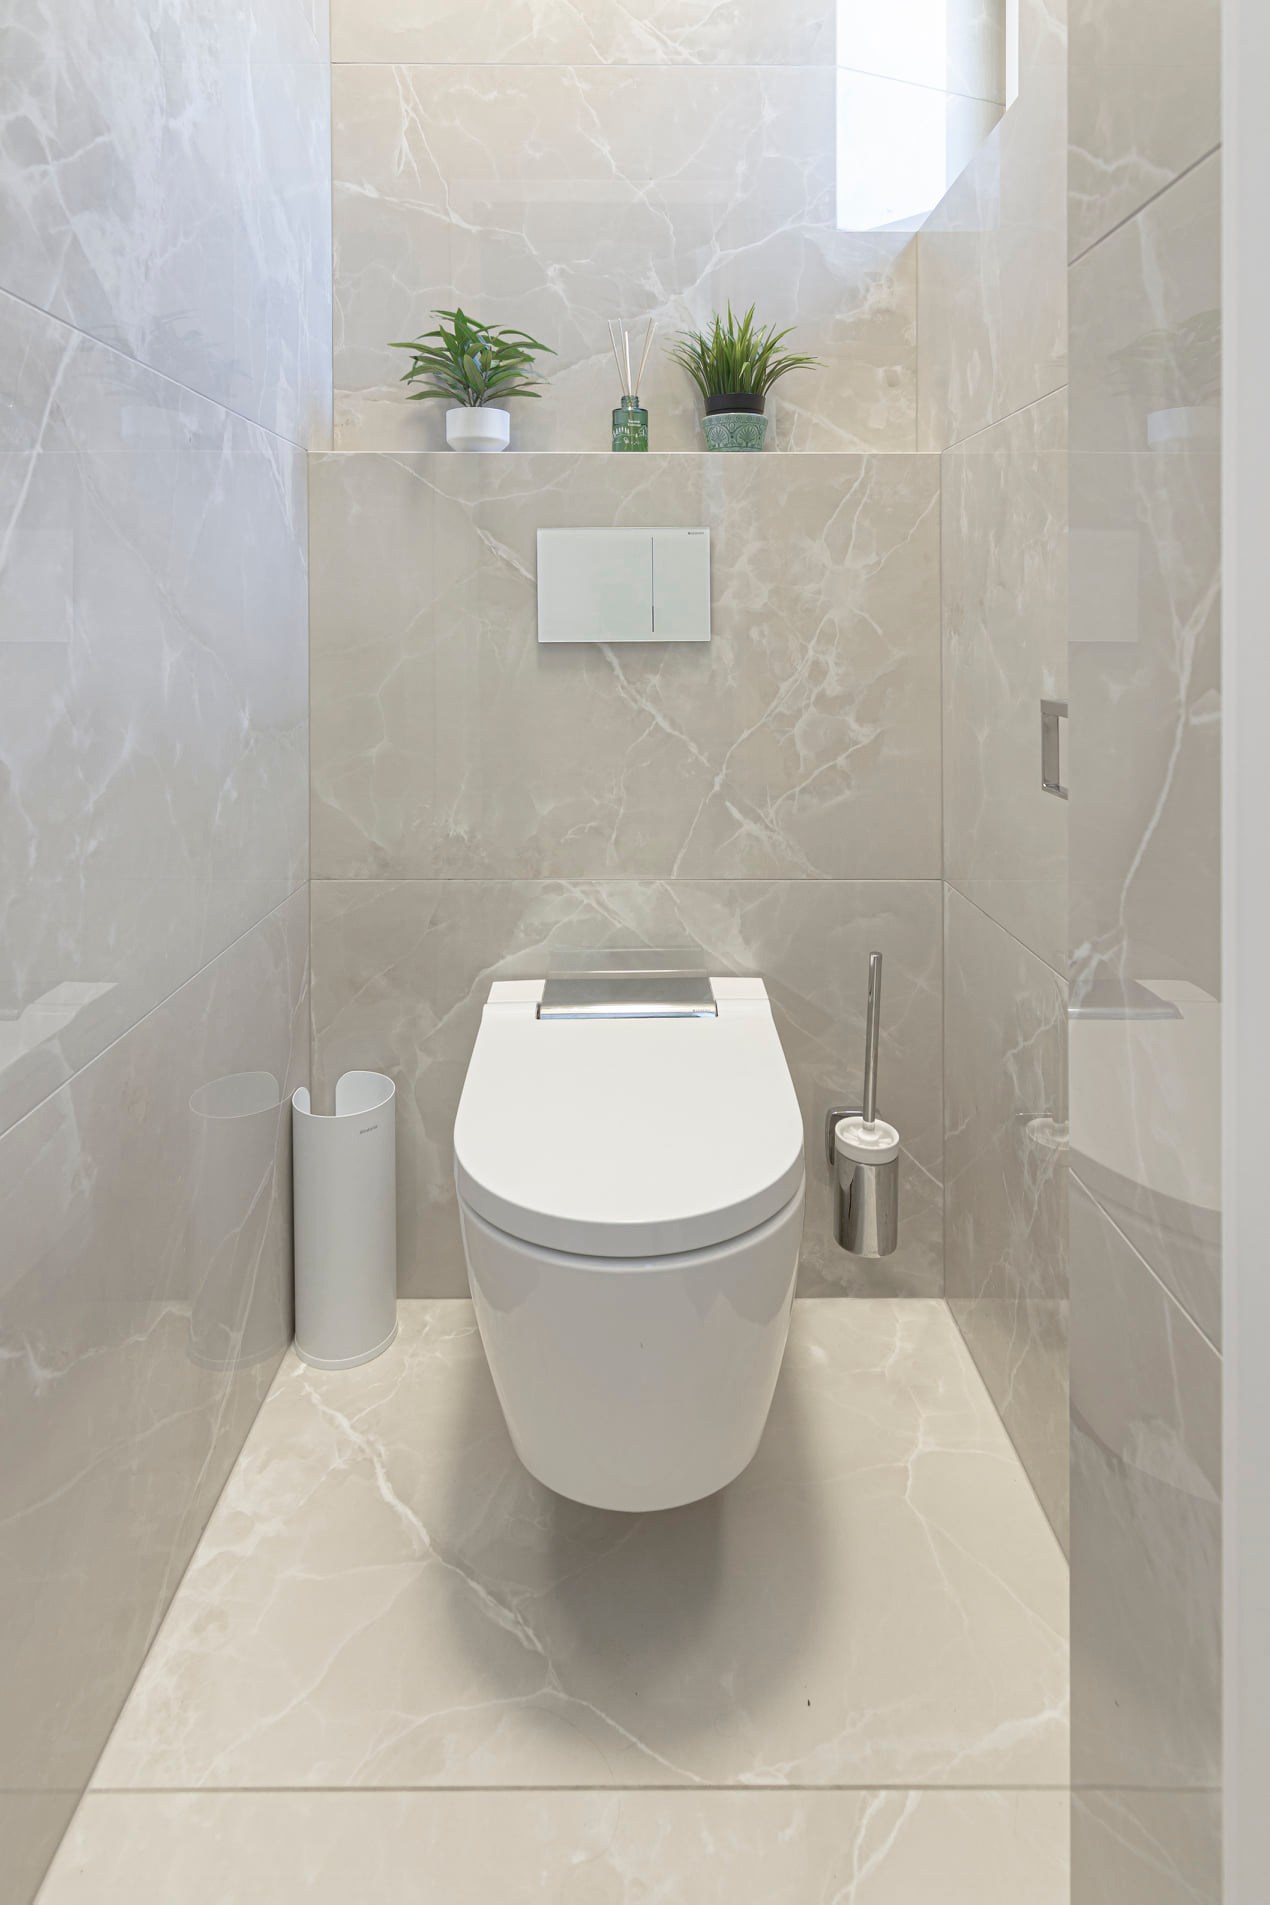 Toaleta s obkladem a dlažbou Exalt of Cerim v designu Oyster Shade